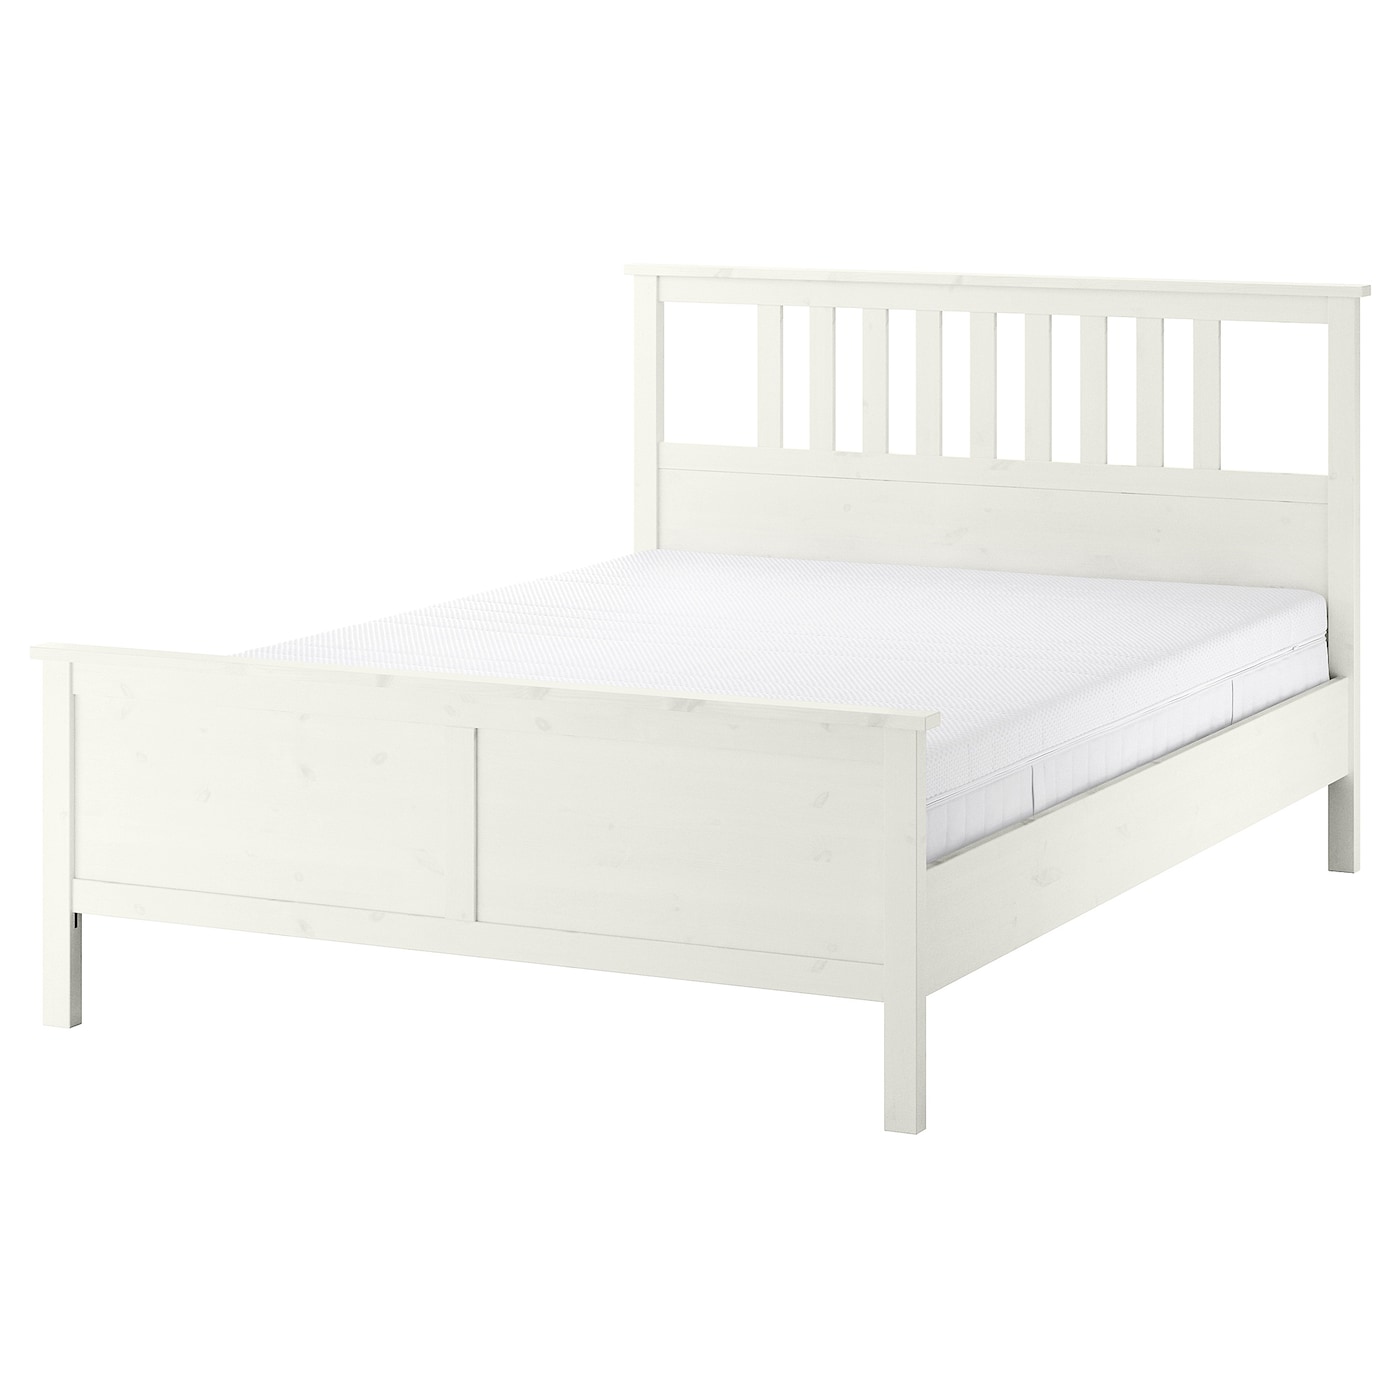 Кровать - IKEA HEMNES, 200х160 см, жесткий матрас, белый, ХЕМНЭС ИКЕА